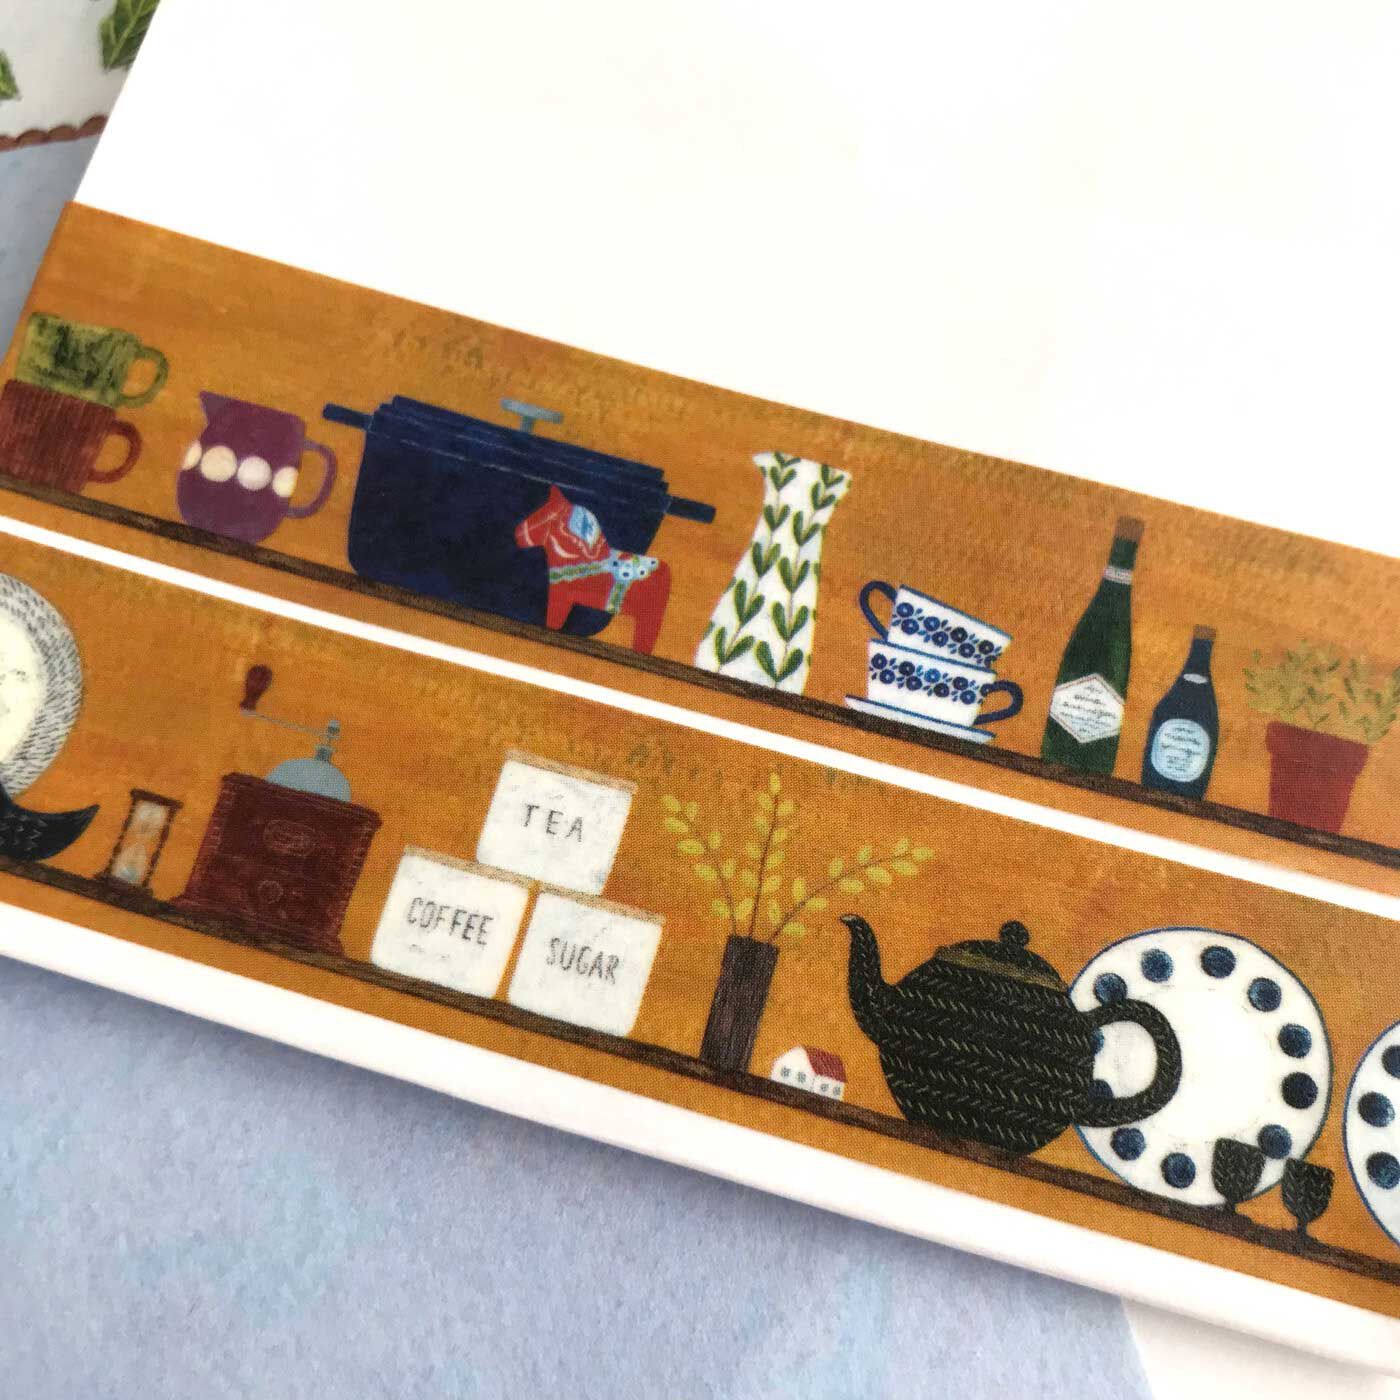 フェリシモの雑貨Kraso|cozyca products  紙もの文具セット〈浅野みどり〉|キッチンの棚がデザインされたマスキングテープ。ポットやカップ、描かれているひとつひとつのモチーフ、どれも、全部ぜんぶかわいい。